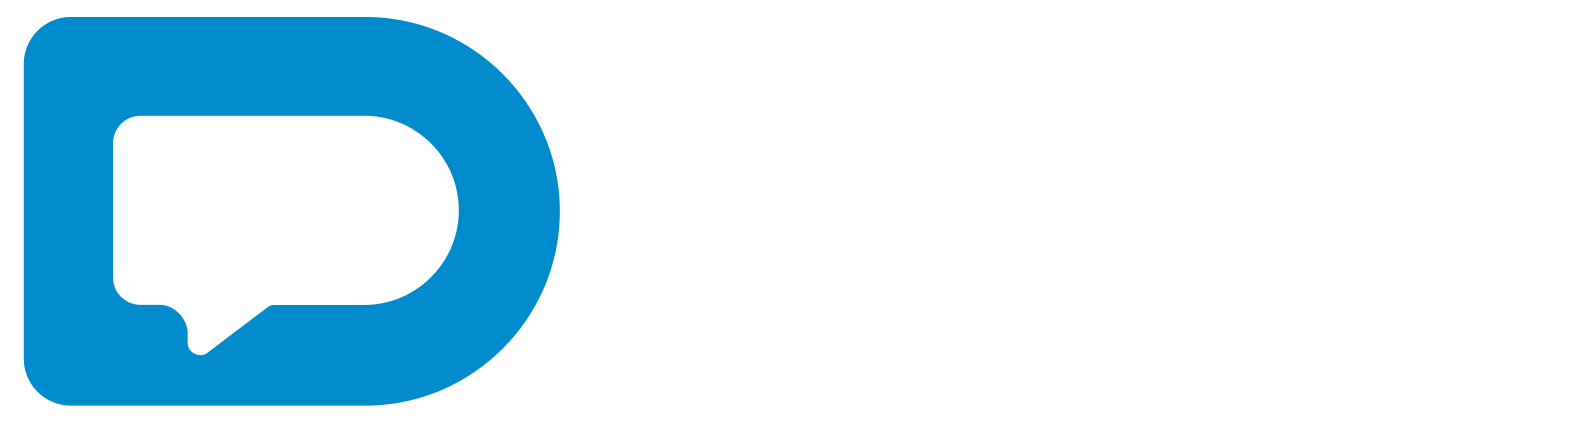 Daryo logo white